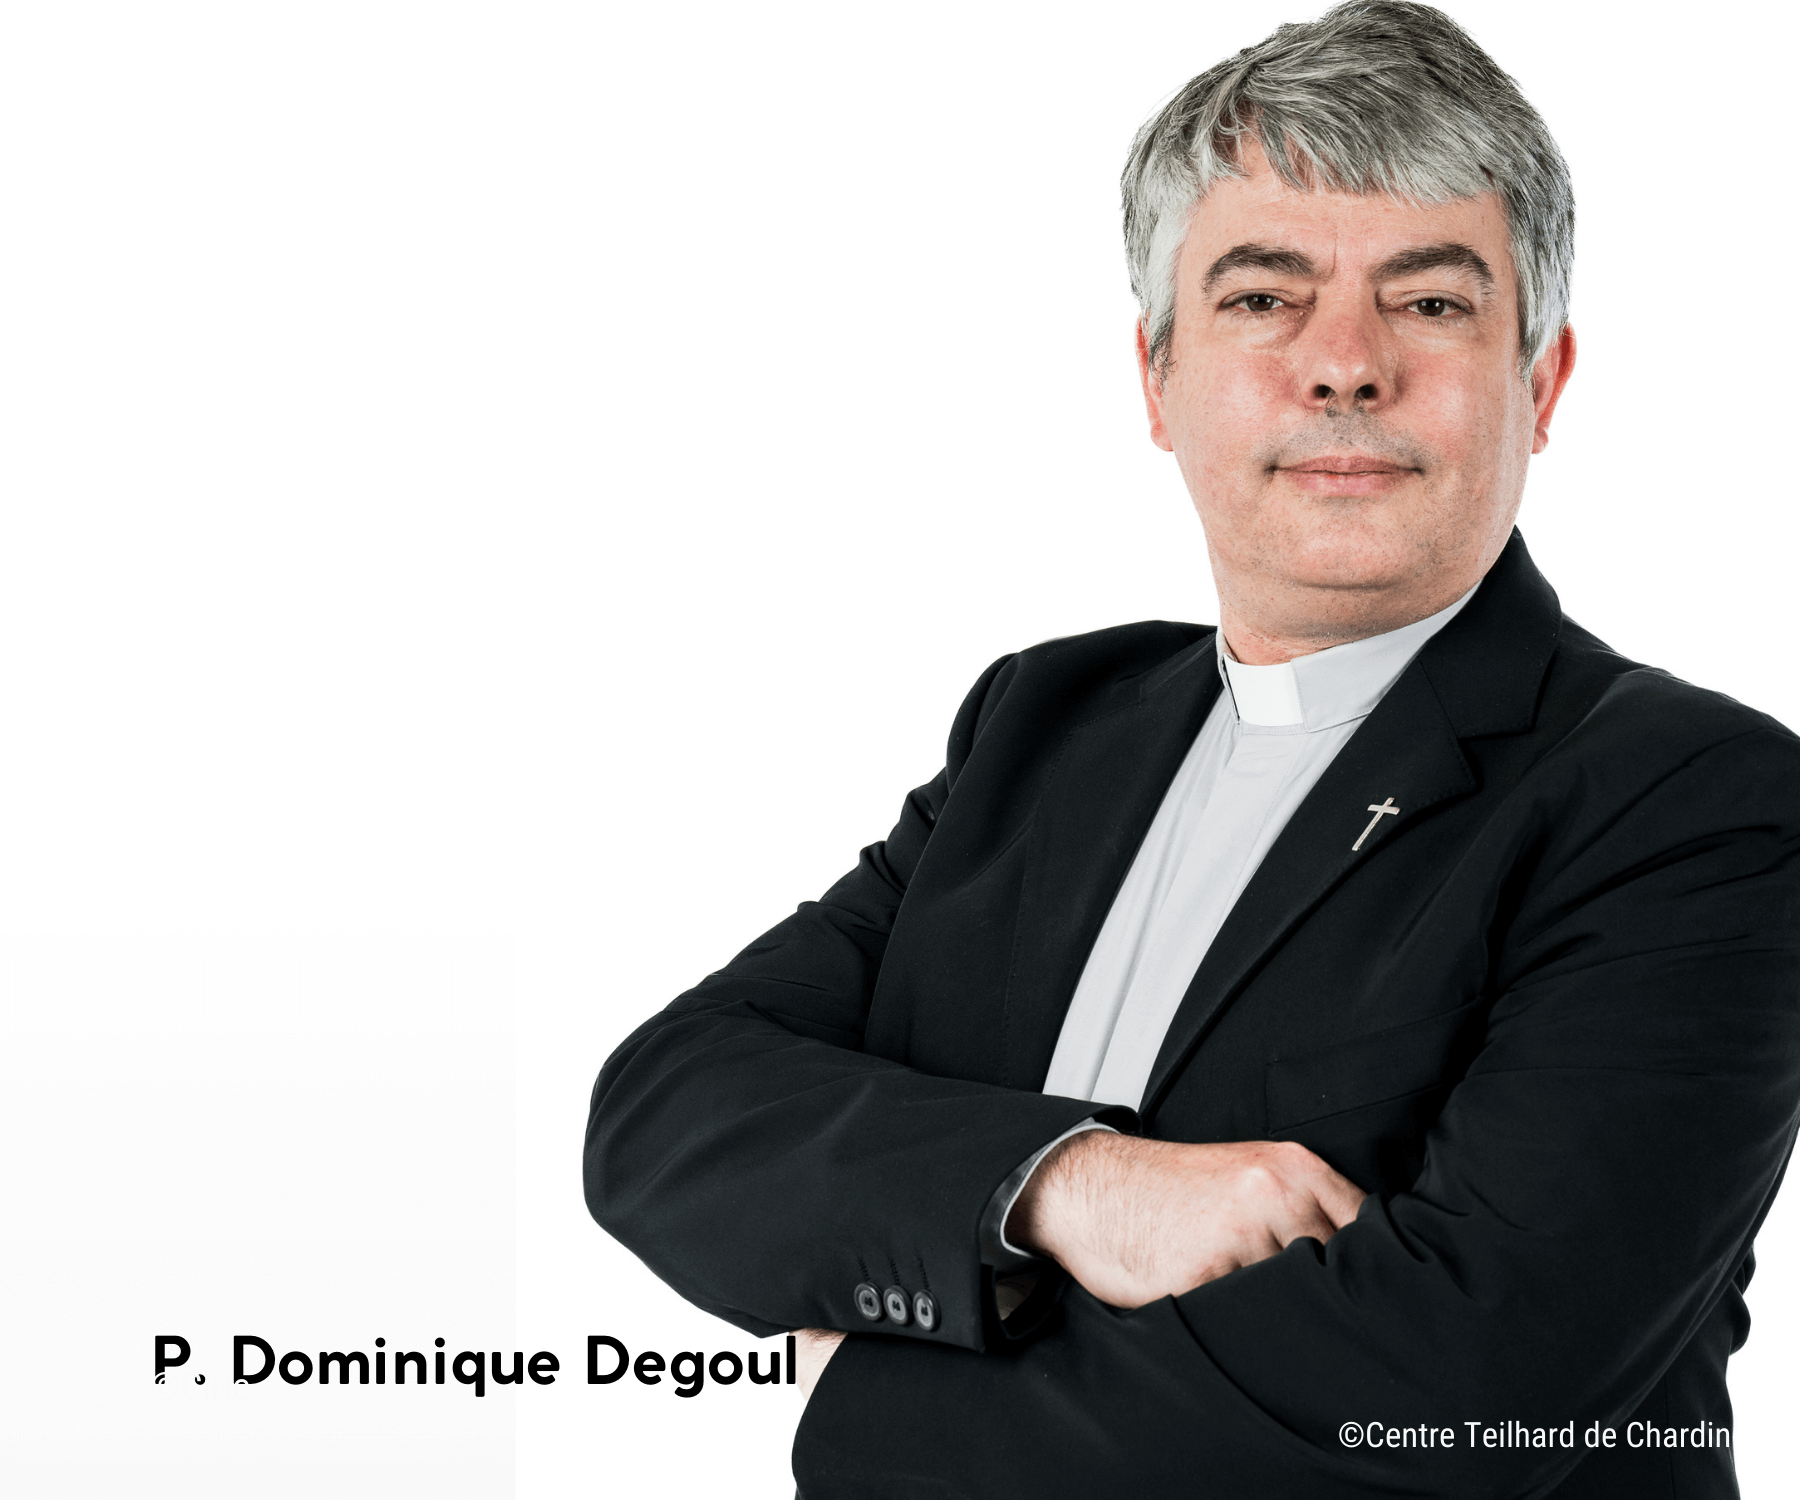 P. Dominique Degoul